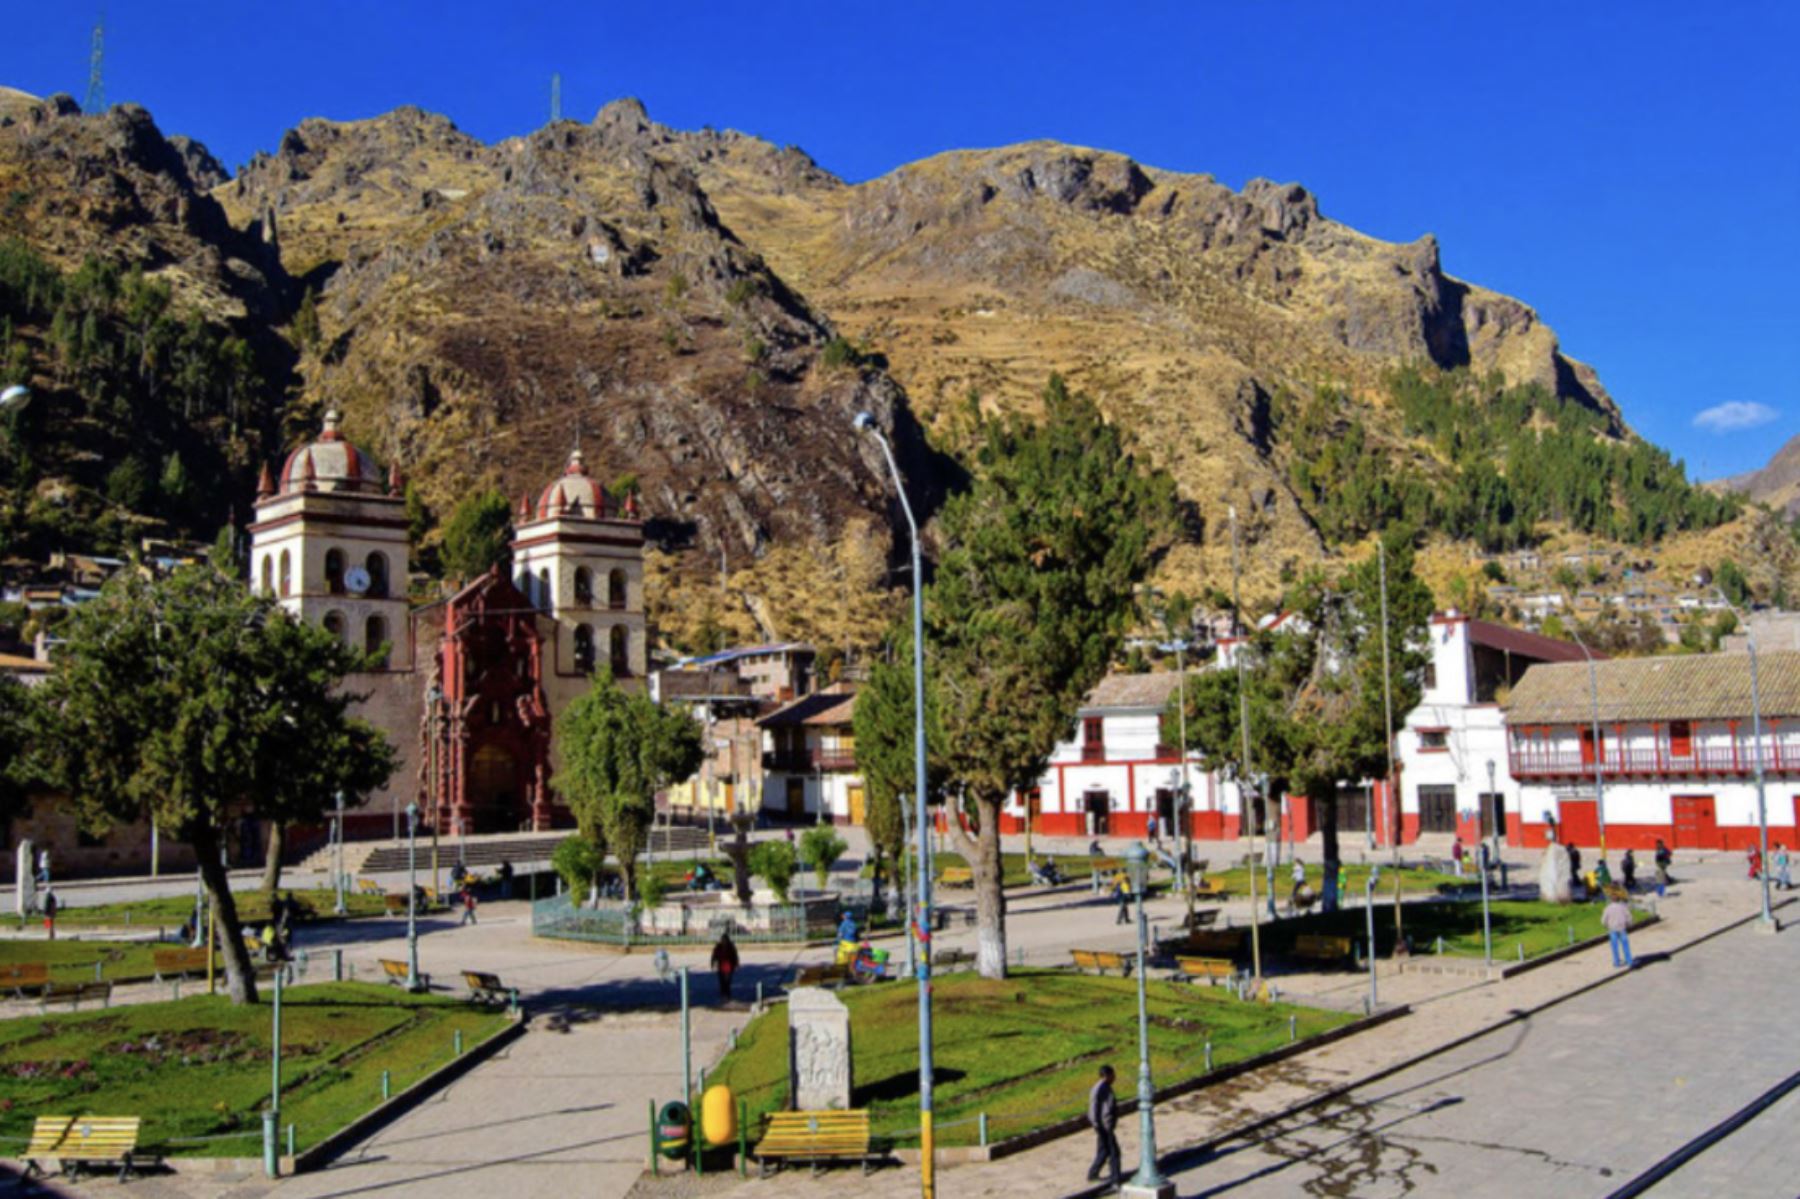 La ceremonia de entrega del "Safe Travels” por parte del Ministerio de Comercio Exterior y Turismo (Mincetur) se realizará mañana sábado al mediodía, en la plaza principal de la ciudad de Huancavelica.